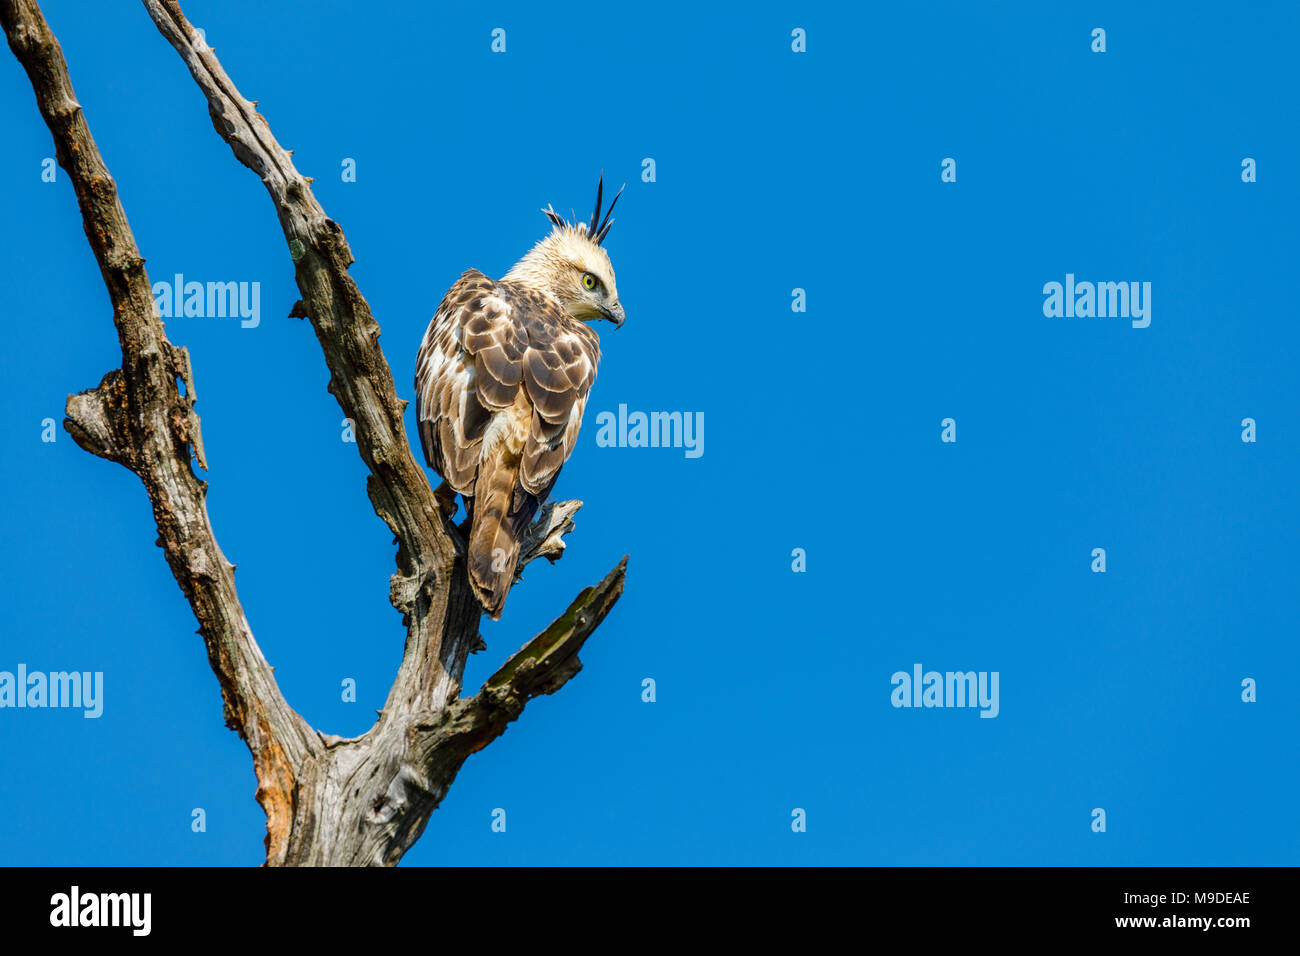 Austauschbare hawk - Adler oder Crested hawk - Adler (Nisaetus cirrhatus), ein Raptor in einem toten Baum gegen den blauen Himmel thront, Udawalawe National Park, Sri Lanka Stockfoto